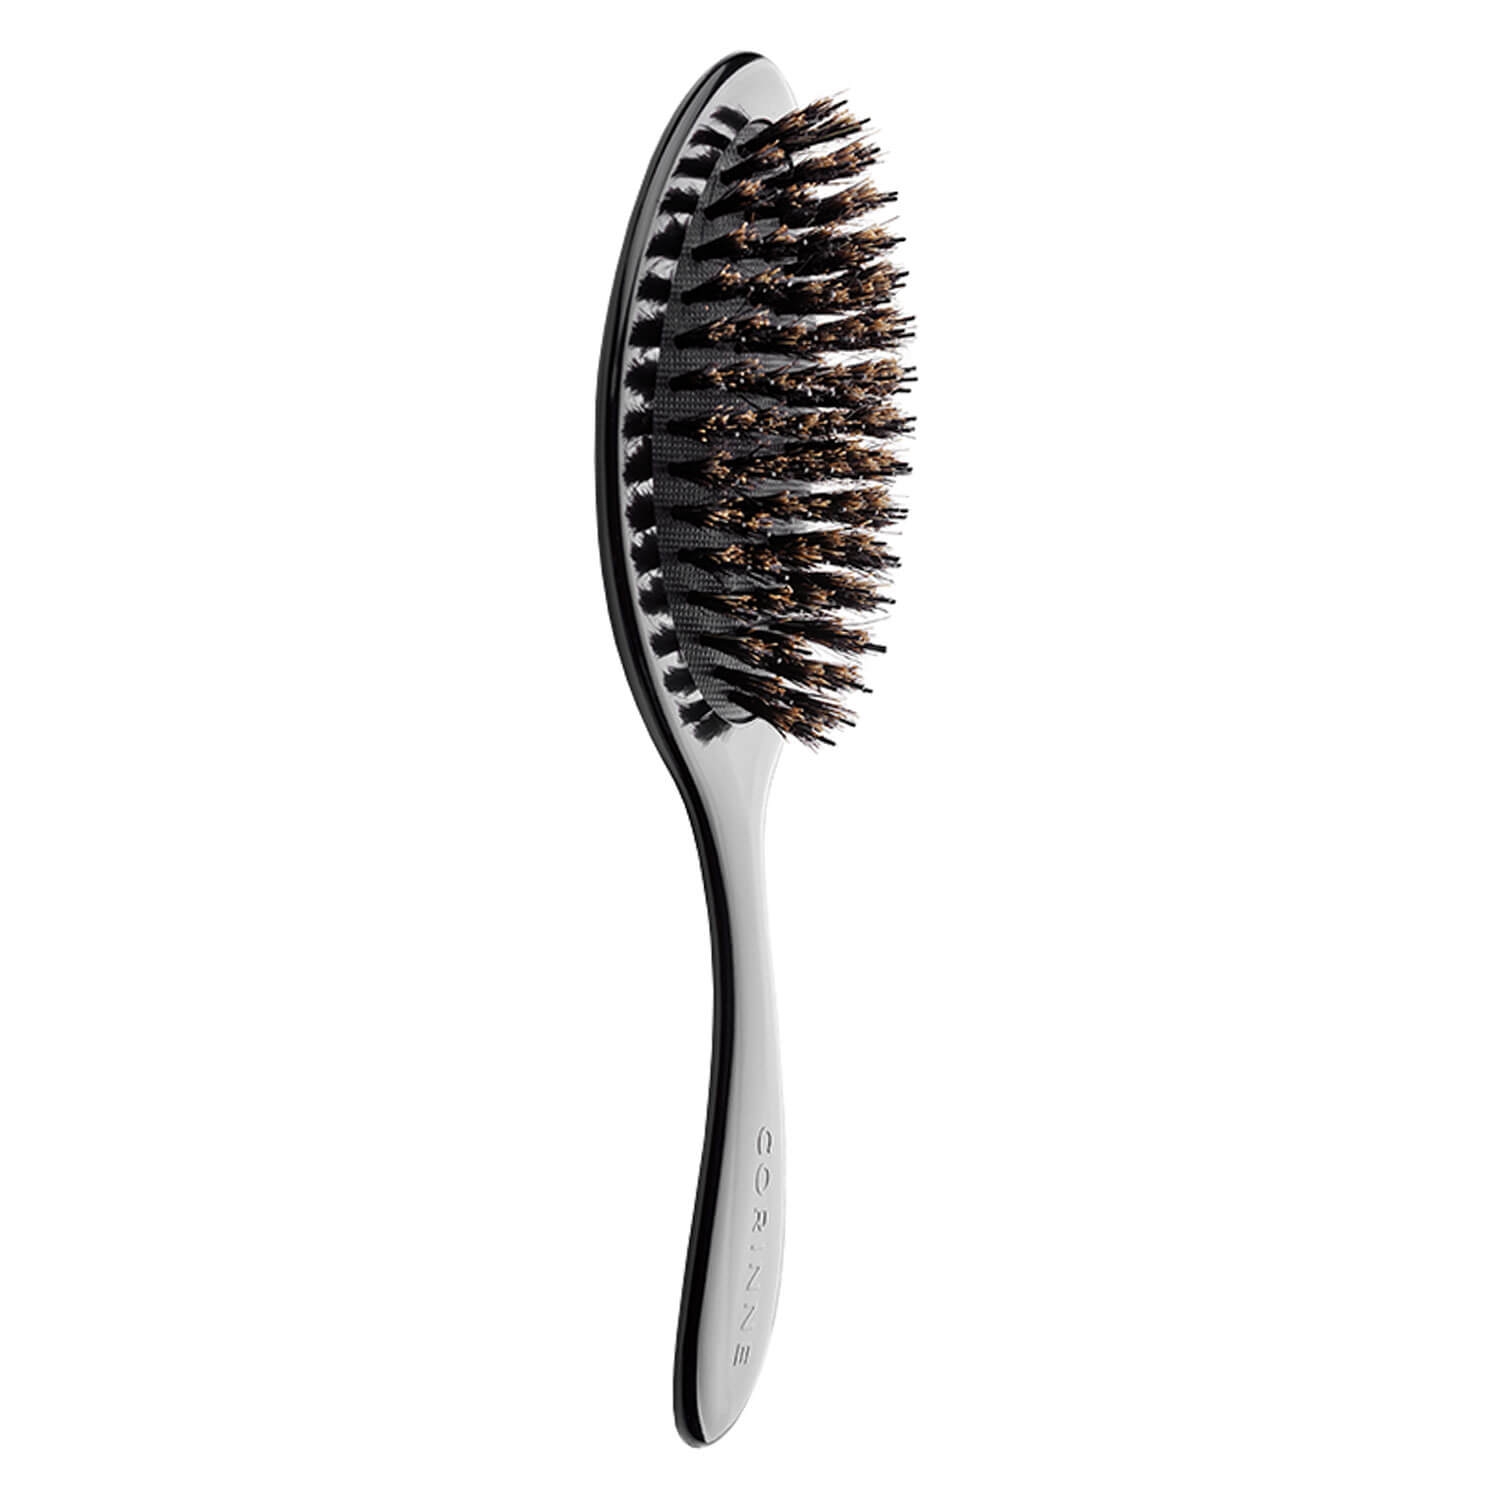 Produktbild von Corinne World - City Brush "Dry" Standard Black